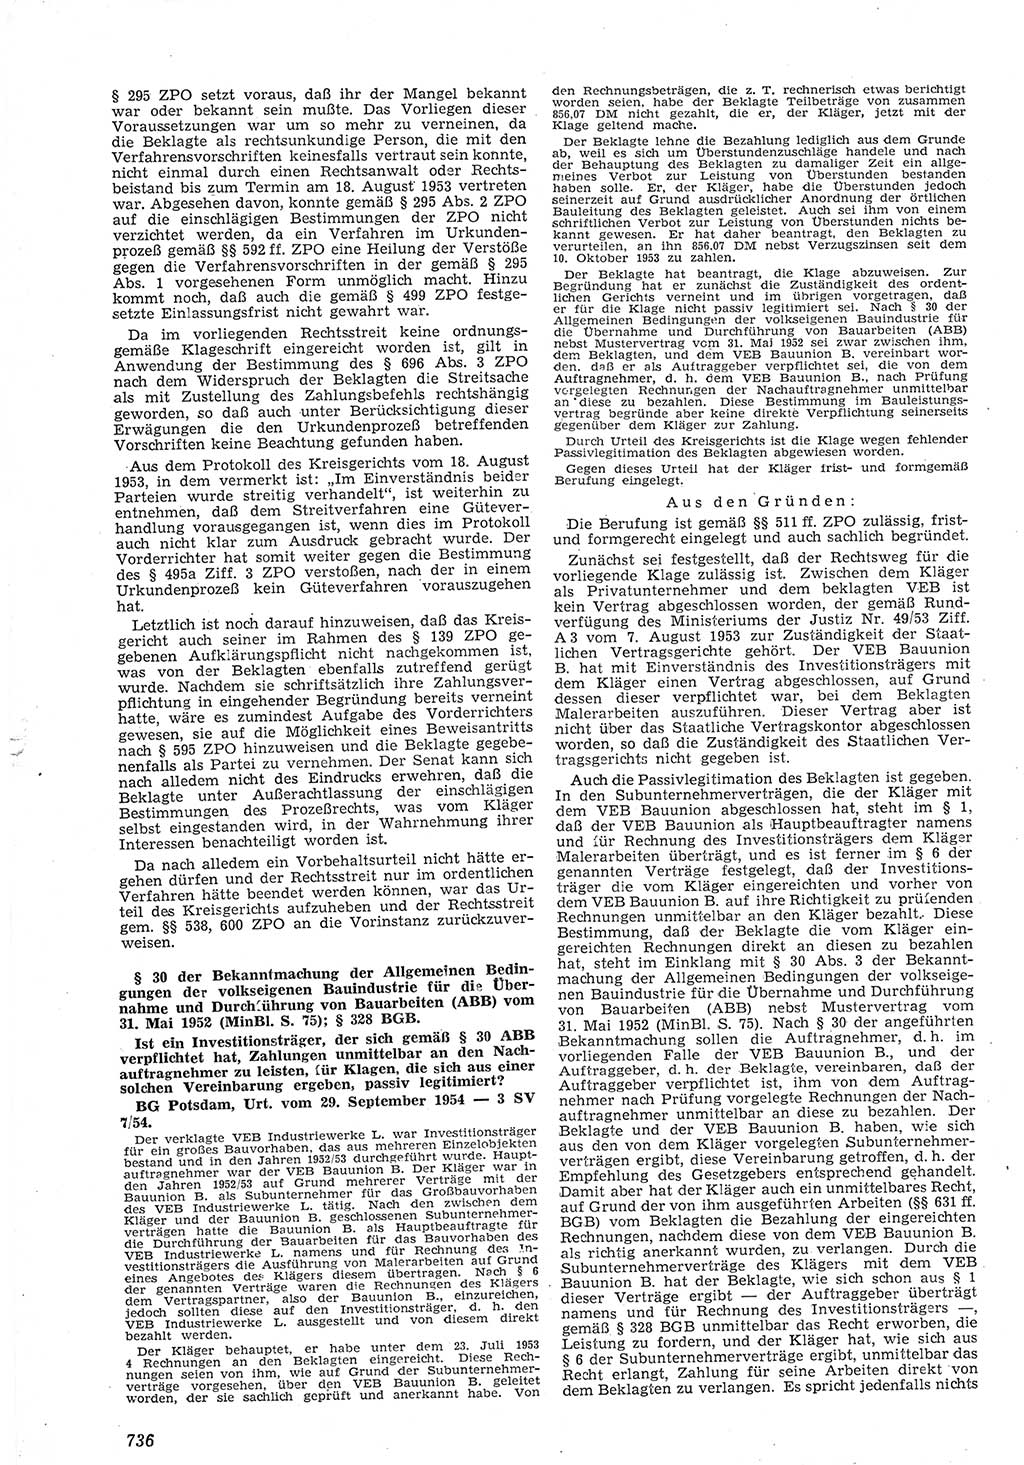 Neue Justiz (NJ), Zeitschrift für Recht und Rechtswissenschaft [Deutsche Demokratische Republik (DDR)], 8. Jahrgang 1954, Seite 736 (NJ DDR 1954, S. 736)